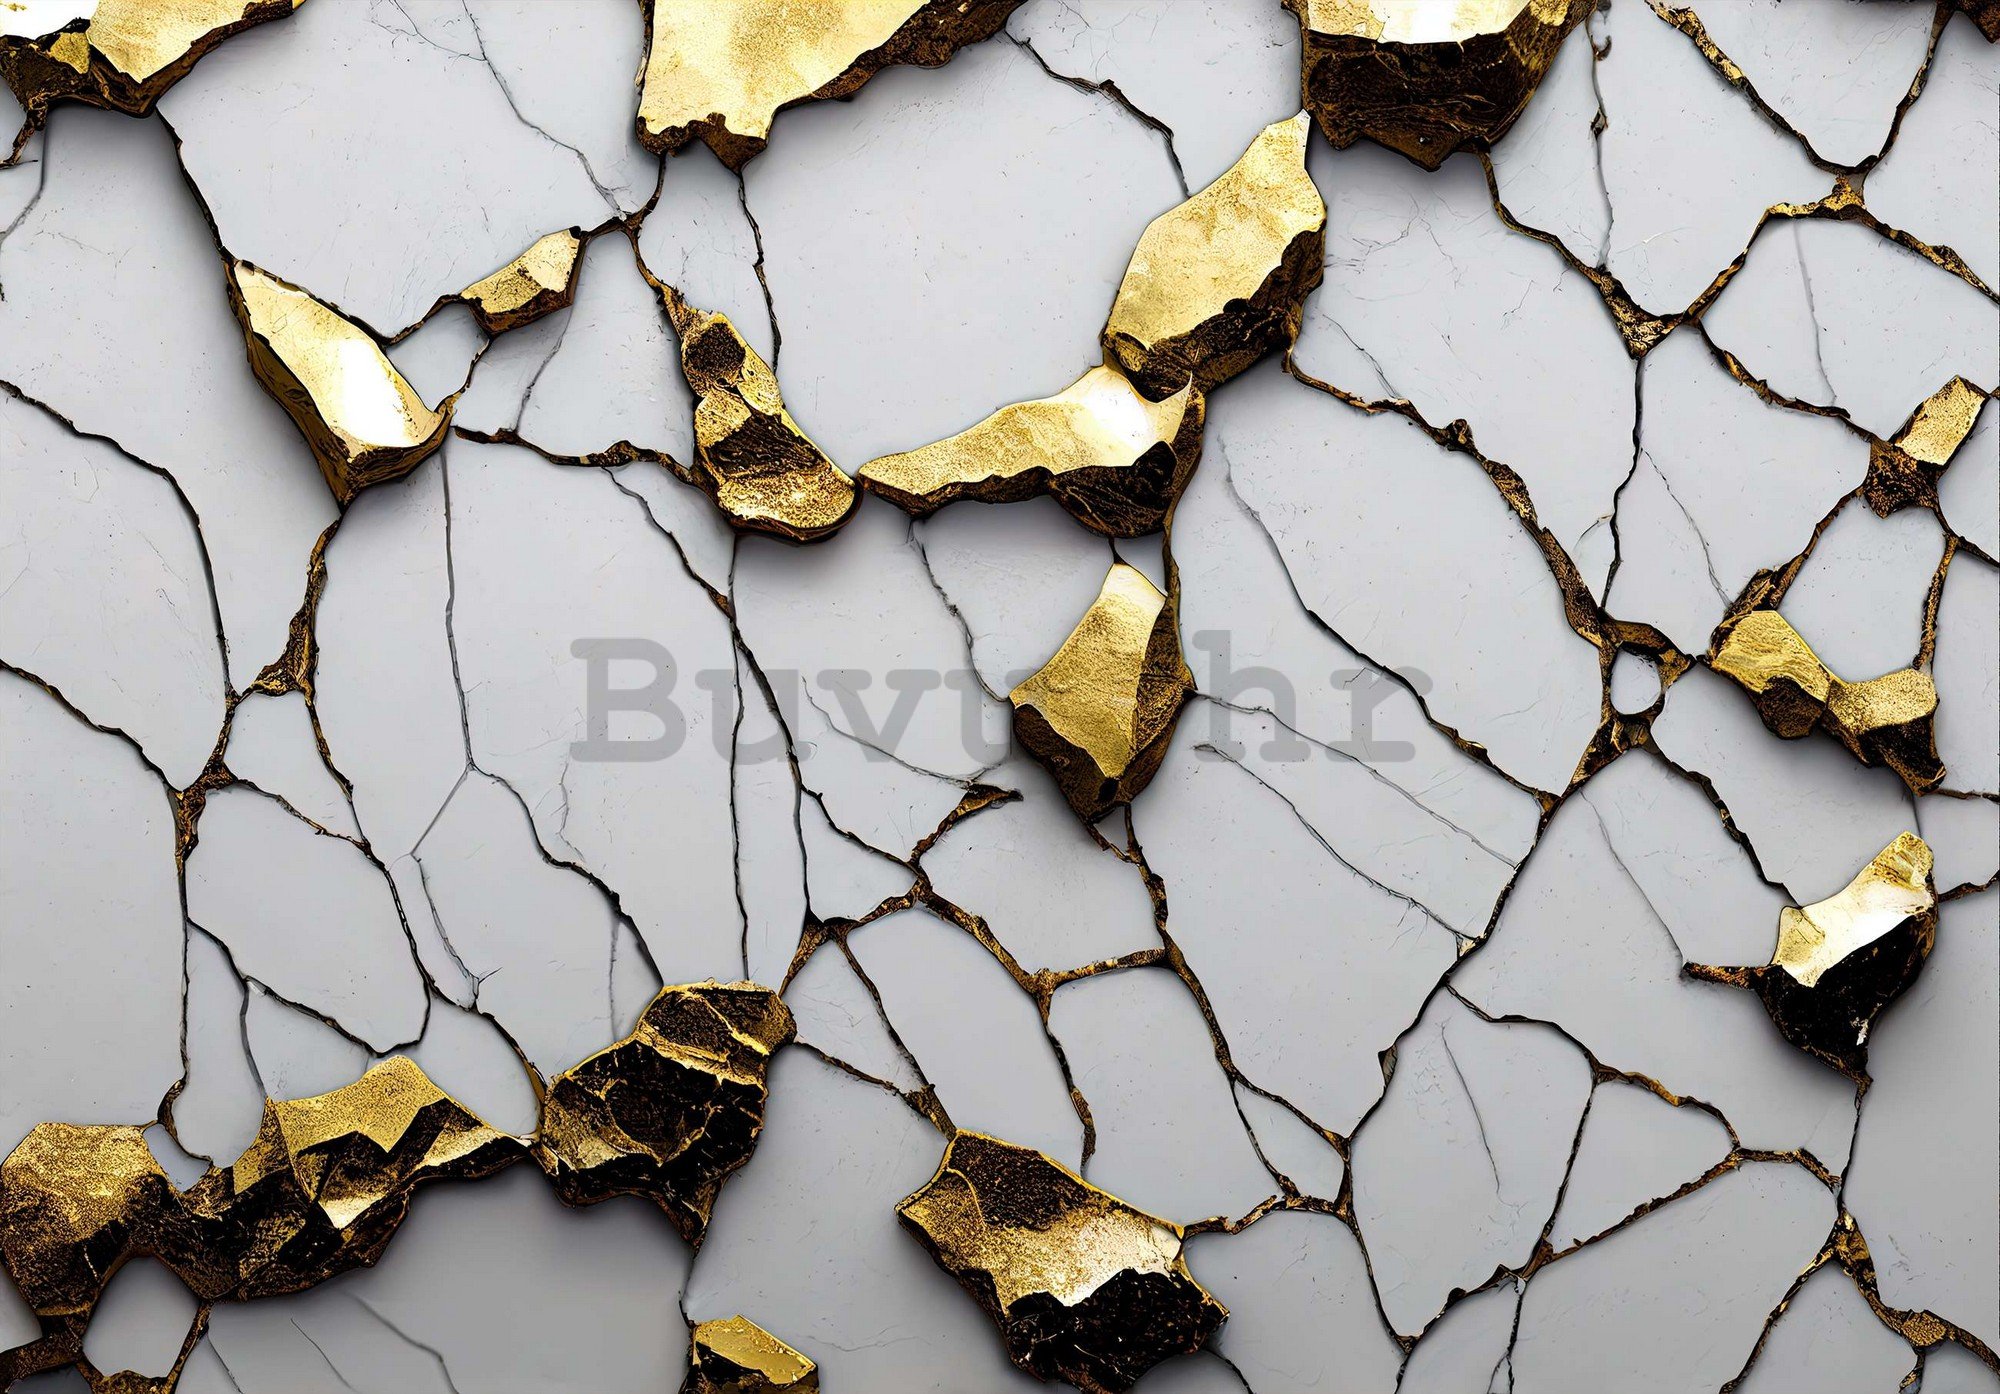 Vlies foto tapeta: Glamurozna imitacija zlatnog mramora s bijelim zidom - 254x184 cm